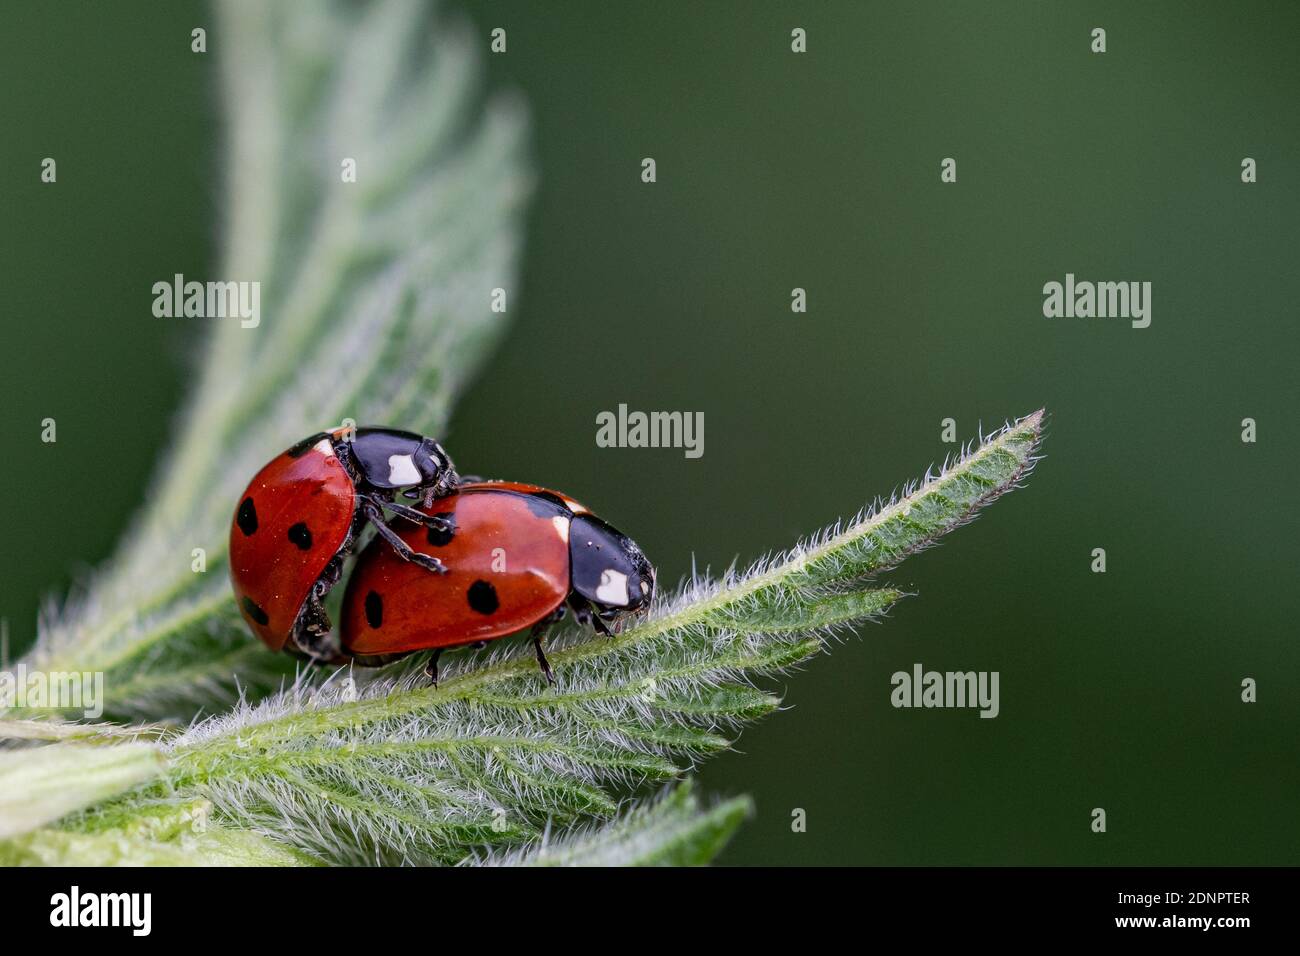 Hoja de flor de siete colores fotografías e imágenes de alta resolución -  Página 2 - Alamy